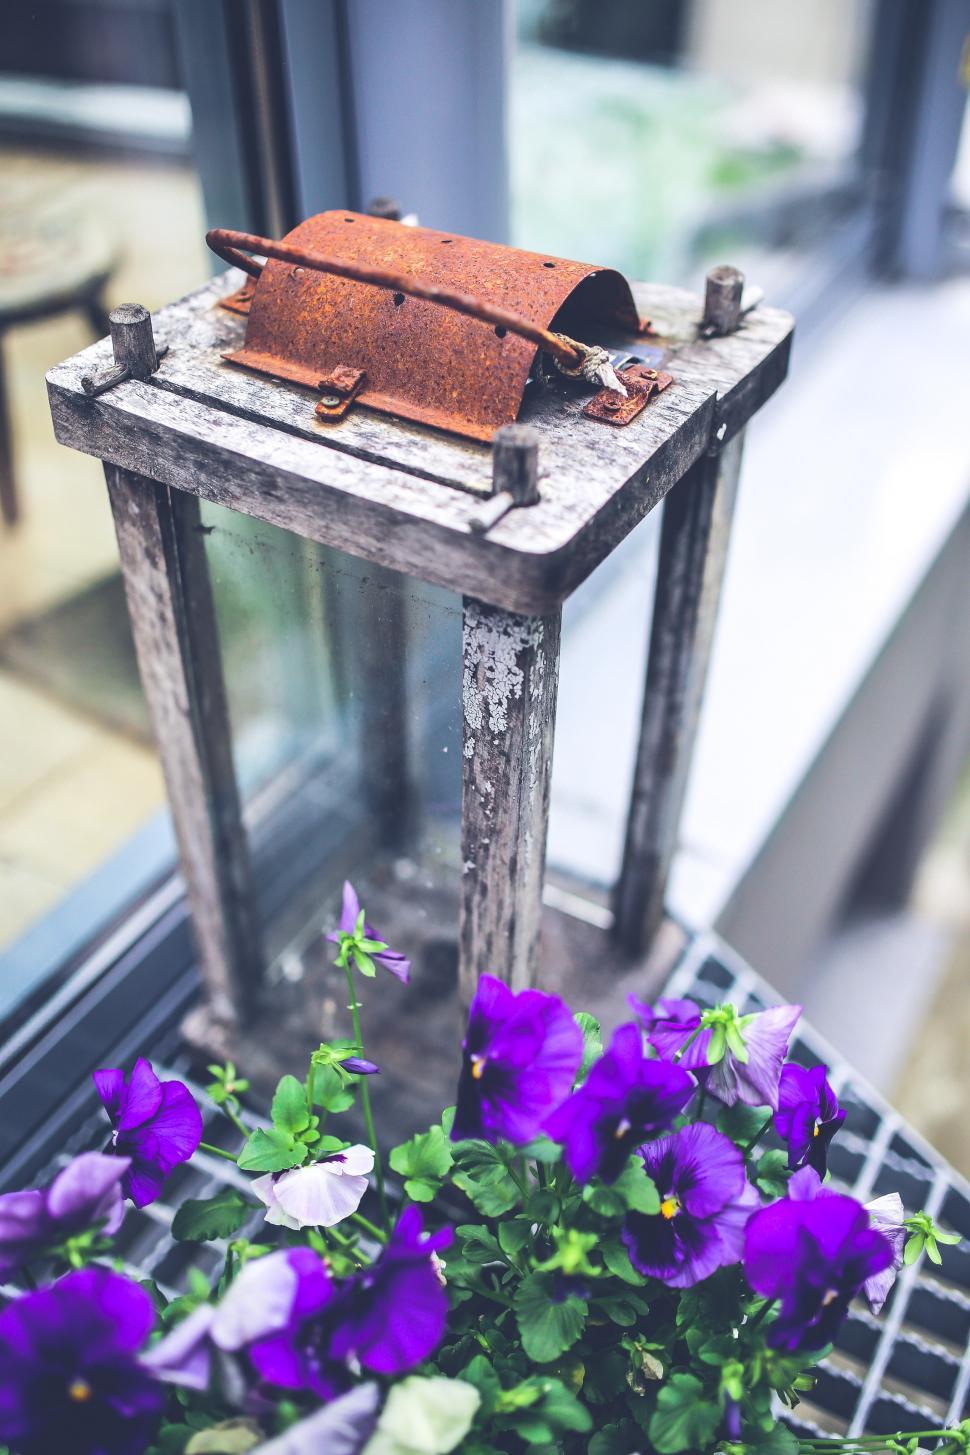 Free Image of Purple Flowers in a Basket on Window Sill 